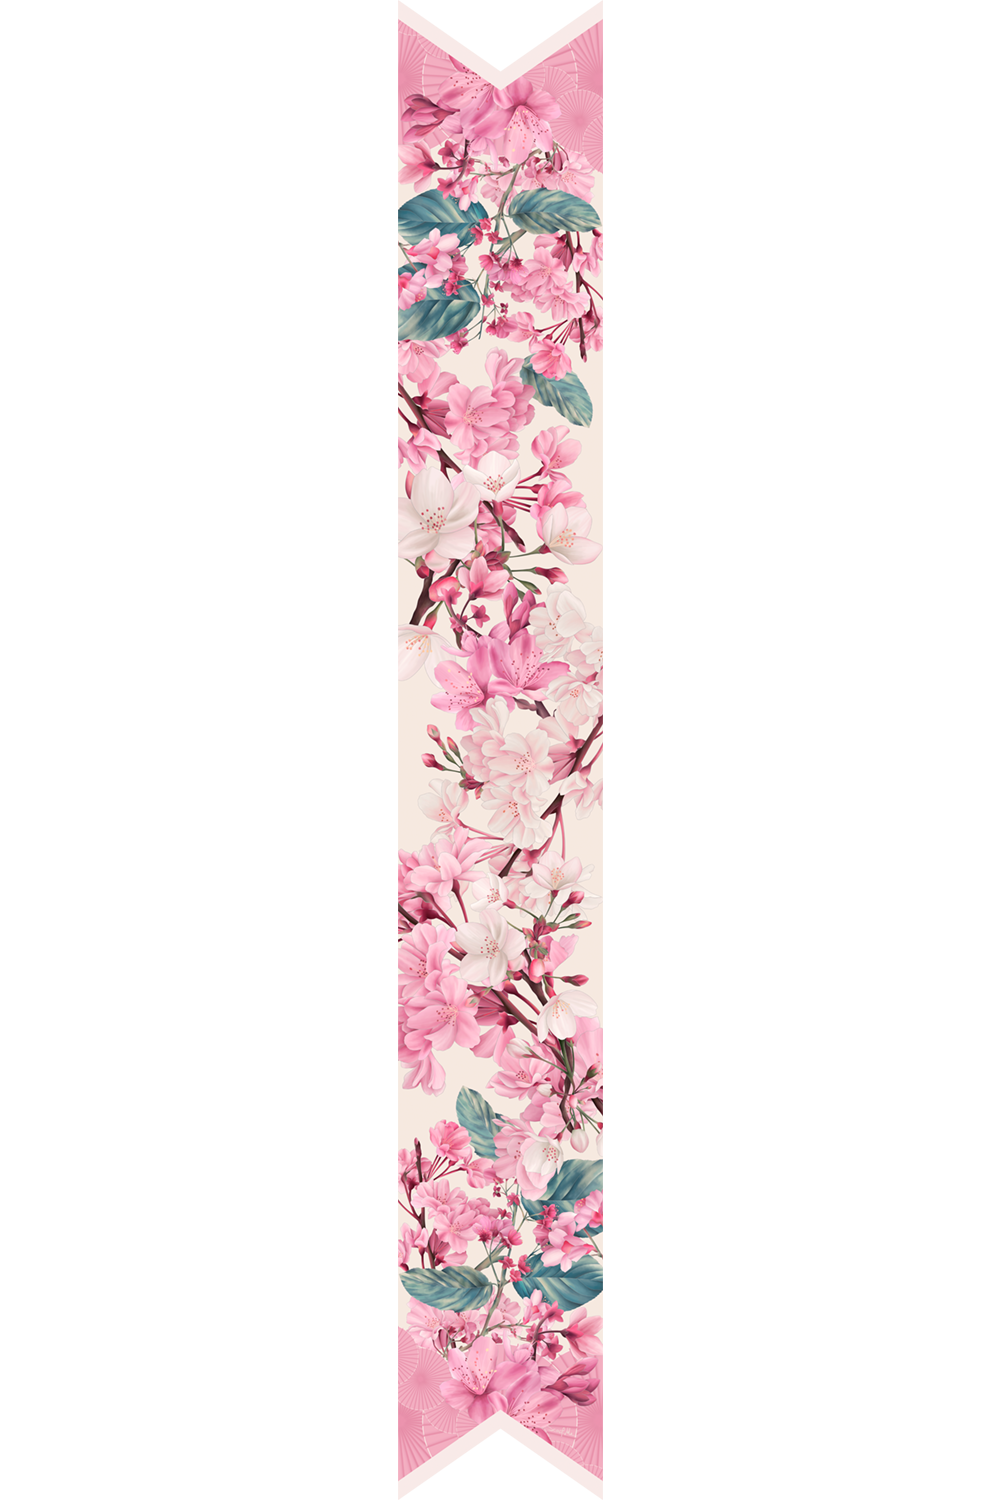 Twilly Sakura Grace in Silk Satin | 8X130cm